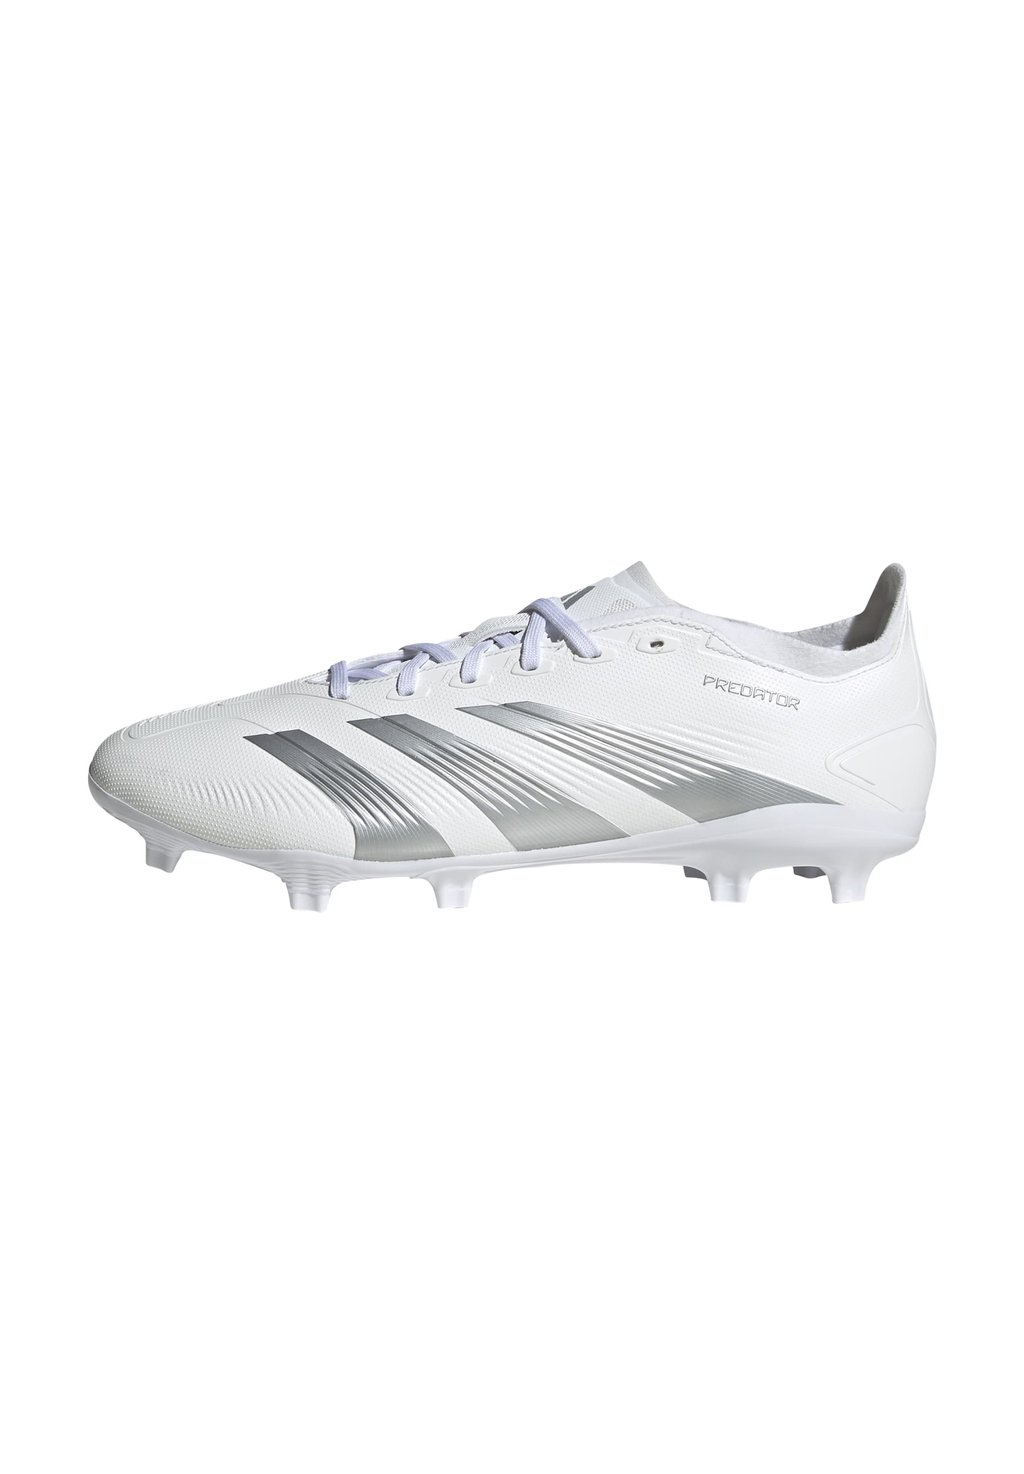 Футбольные бутсы с шипами PREDATOR LEAGUE FG adidas Performance, цвет footwear white/silver metallic